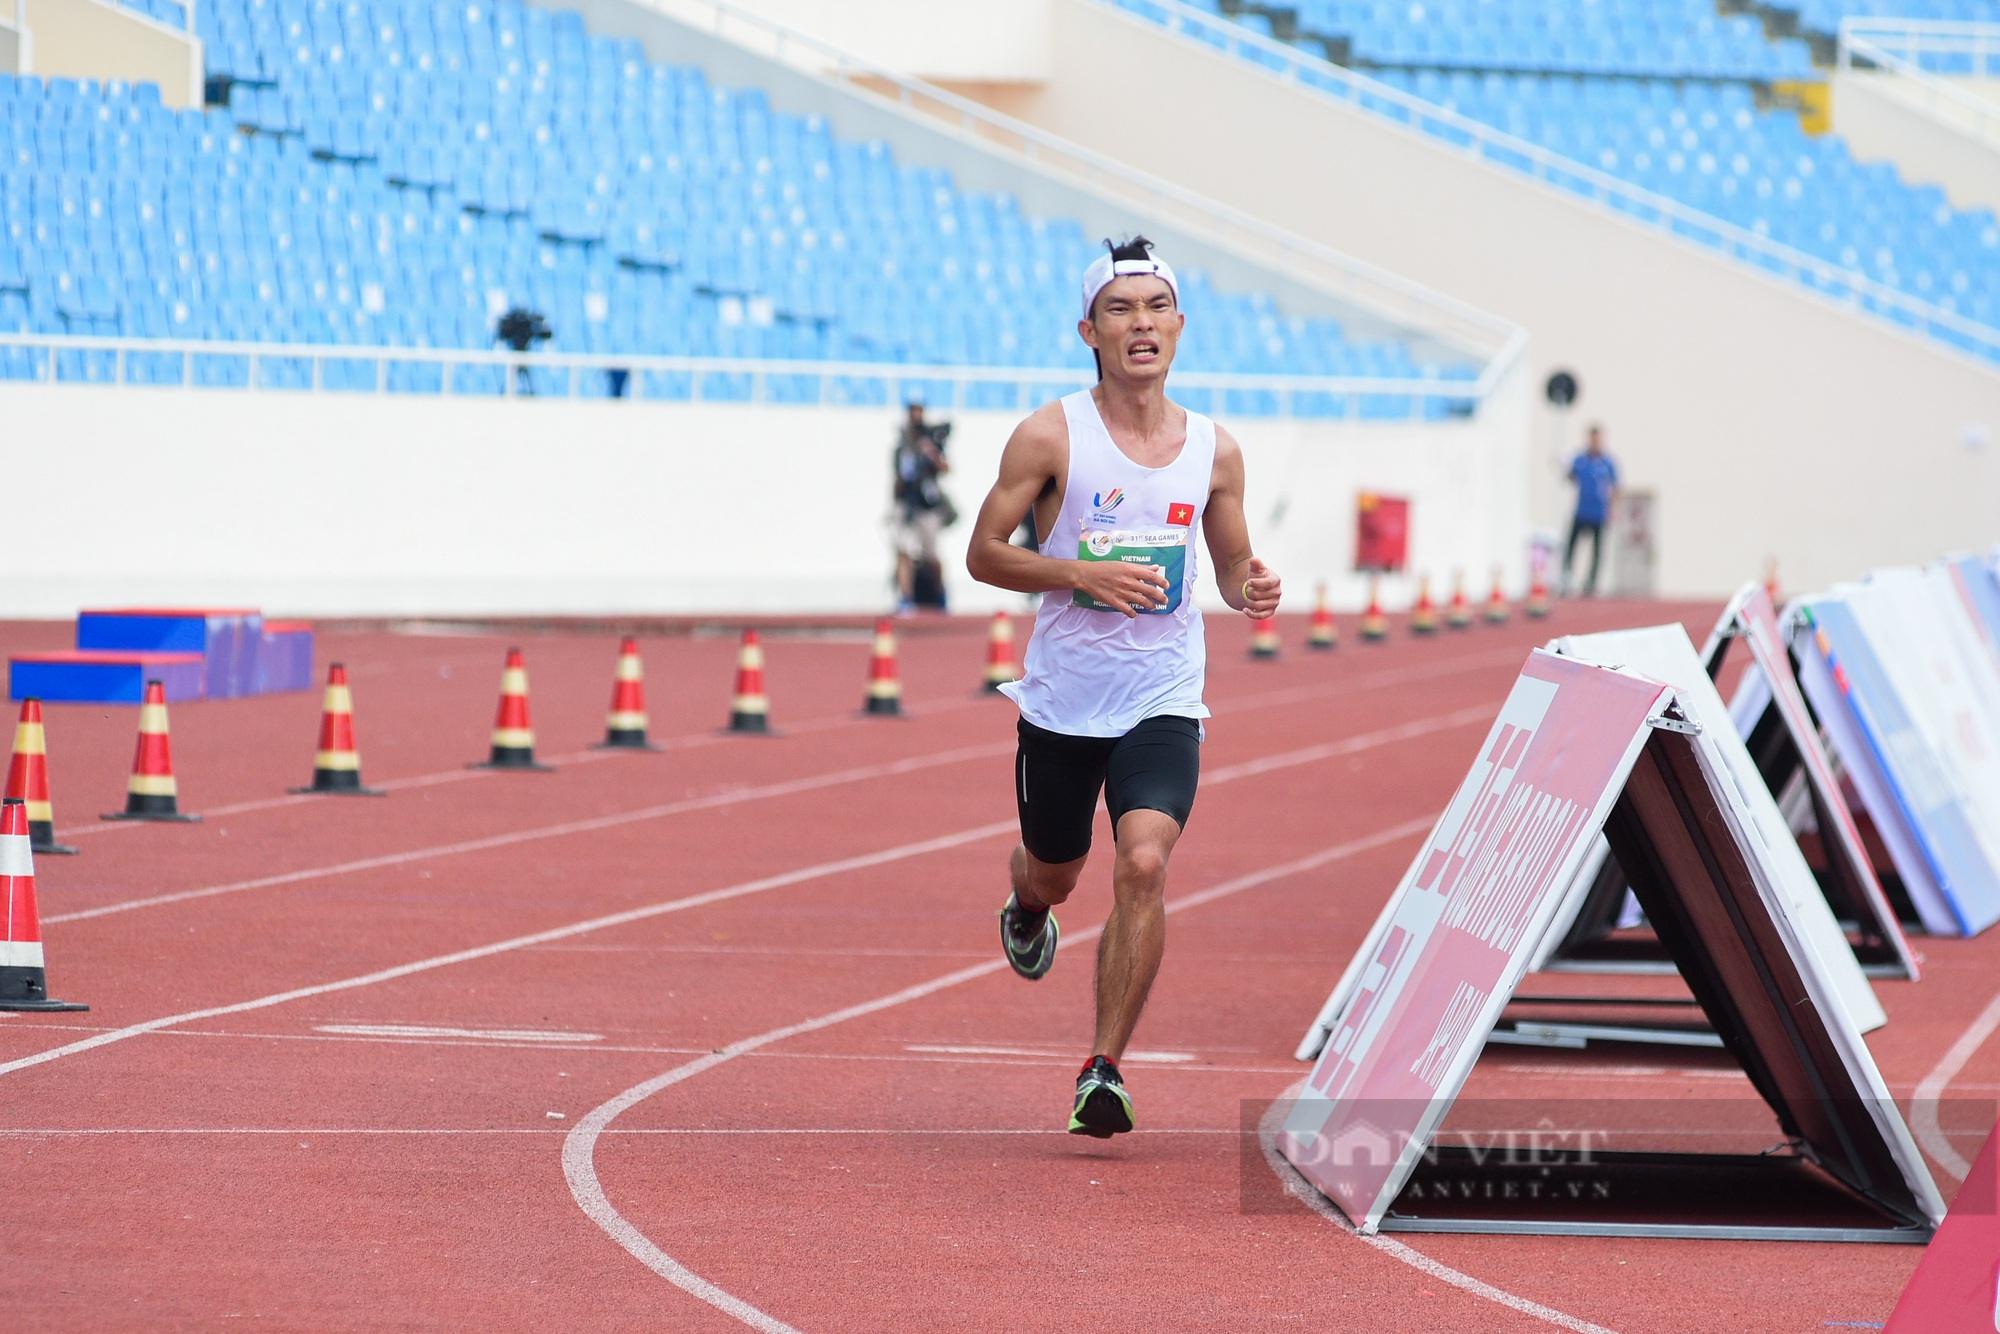 Hoàng Nguyên Thanh giành tấm HCV lịch sử cho marathon Việt Nam sau khi vượt qua 42,195km - Ảnh 3.